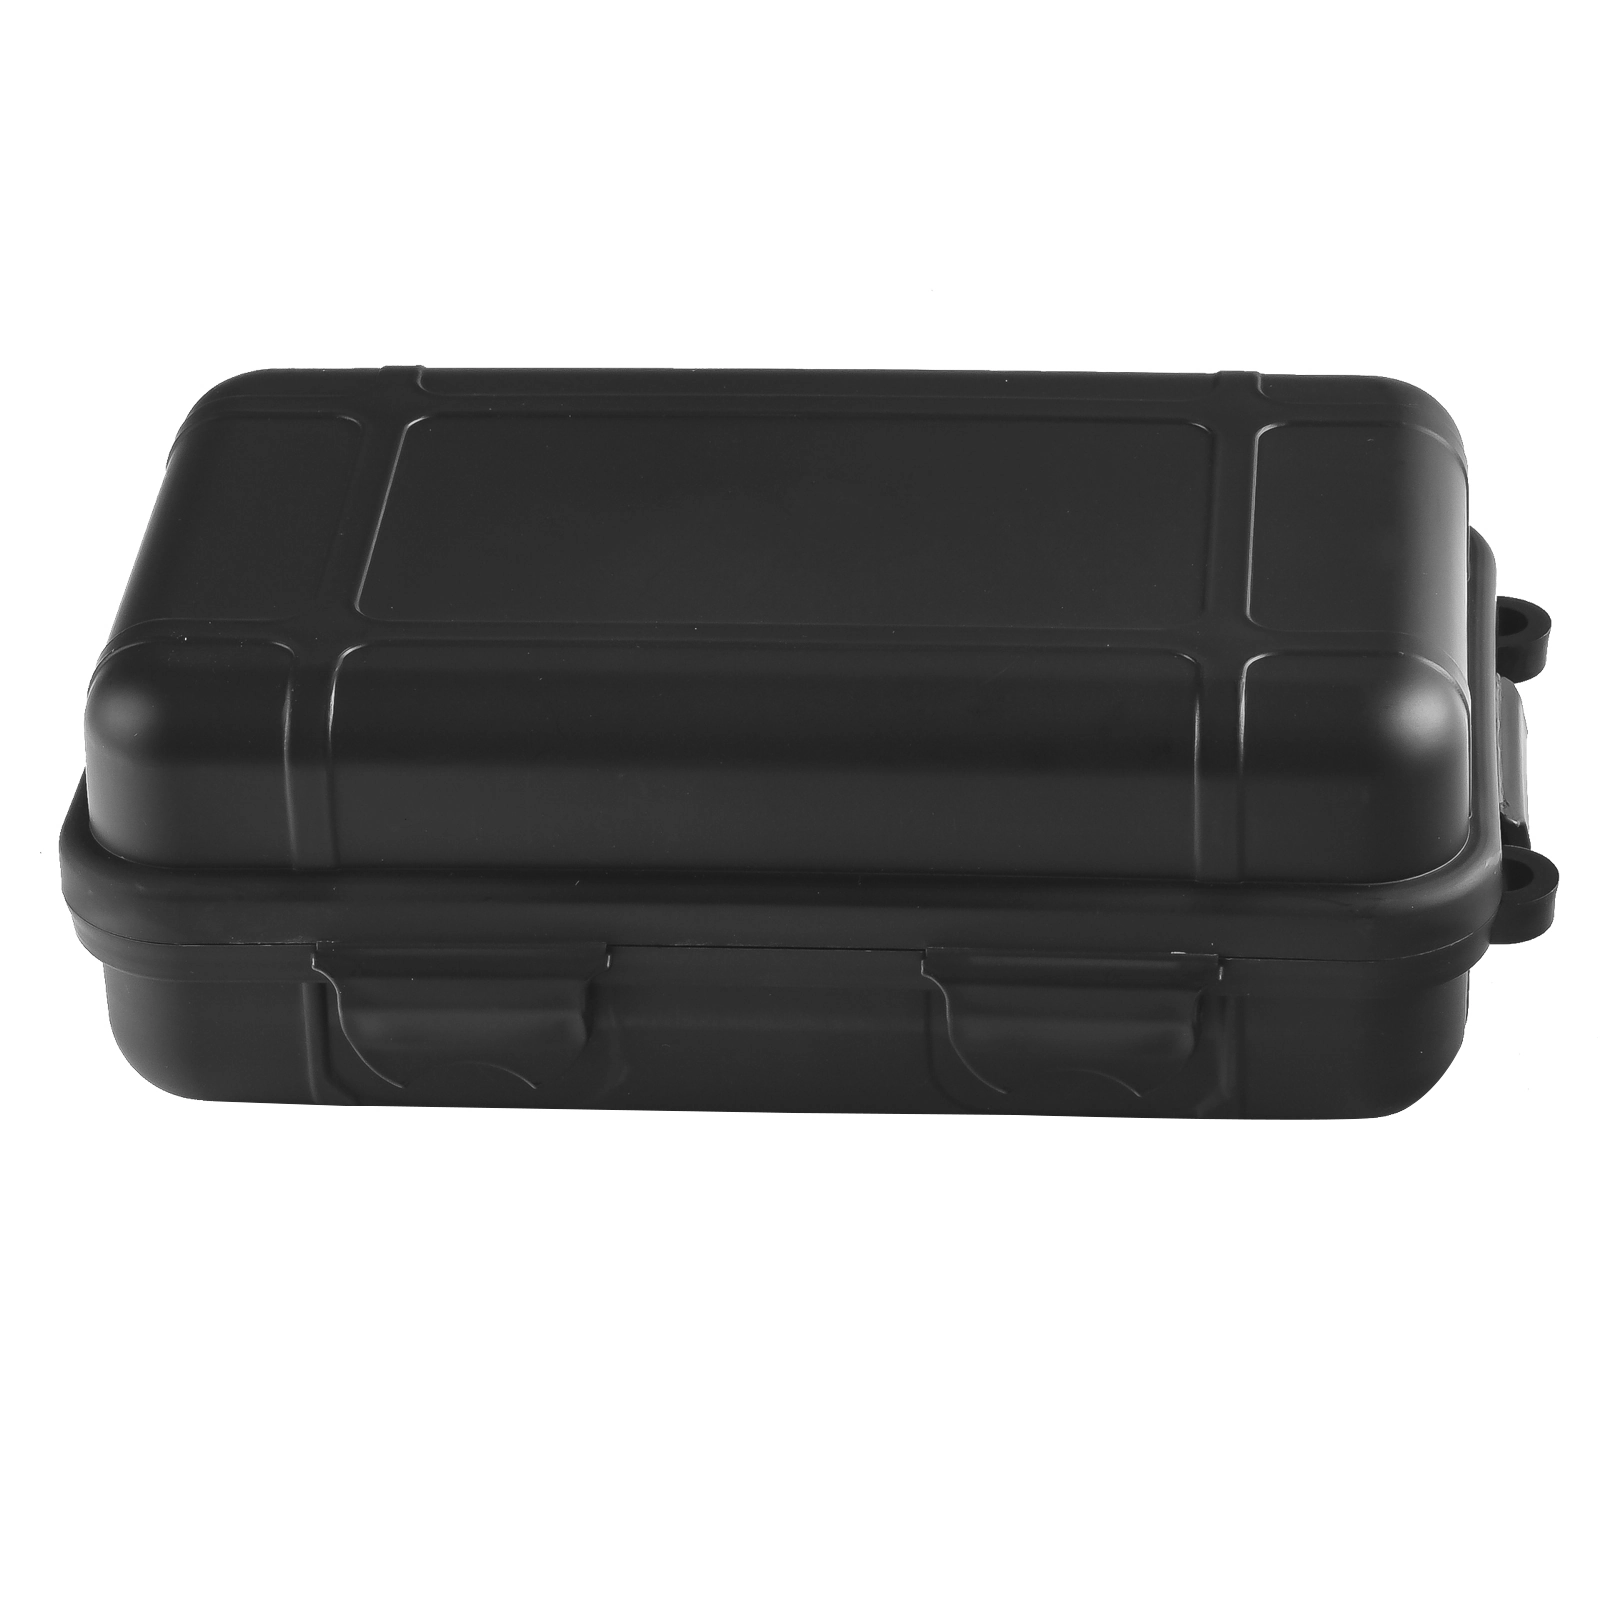 Защищенная коробка для переноски электроники и важных предметов (черная, малая)